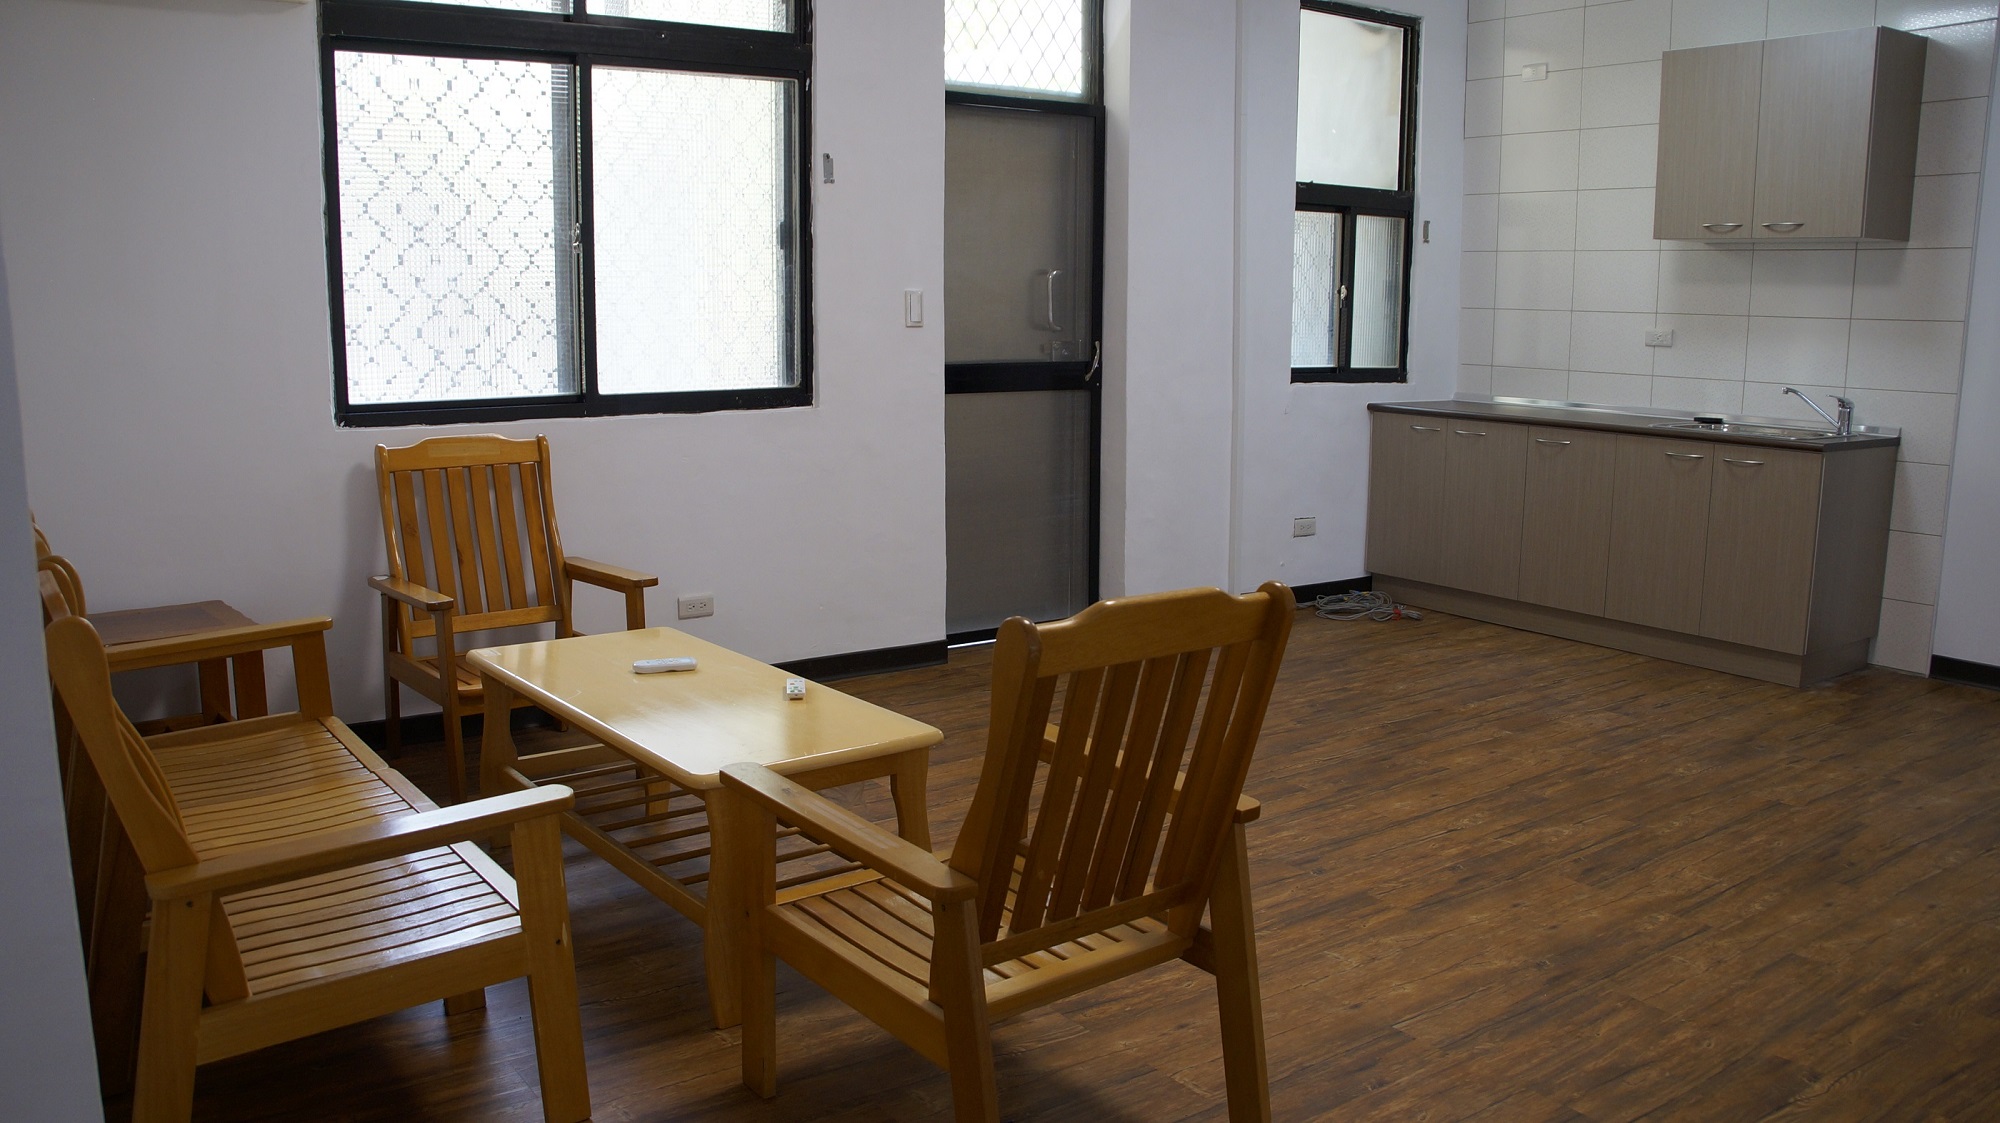 「新埔學人宿舍」總共有4戶，每戶約30坪，圖為客廳及簡易廚房